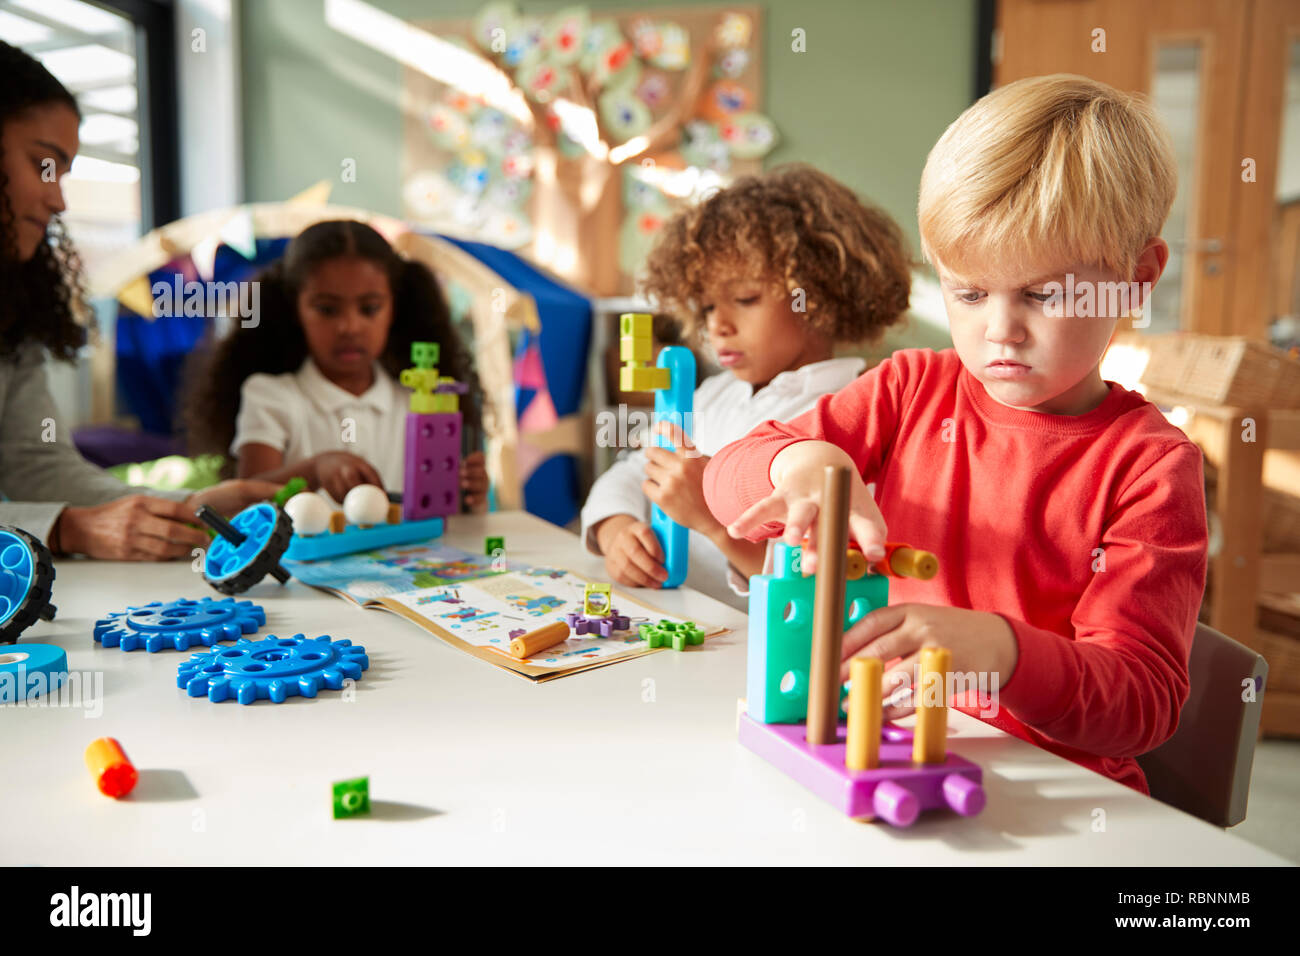 Escuela infantil muchacho sentado en una mesa con la fabricación de juguetes educativos con sus compañeros, cerrar Foto de stock